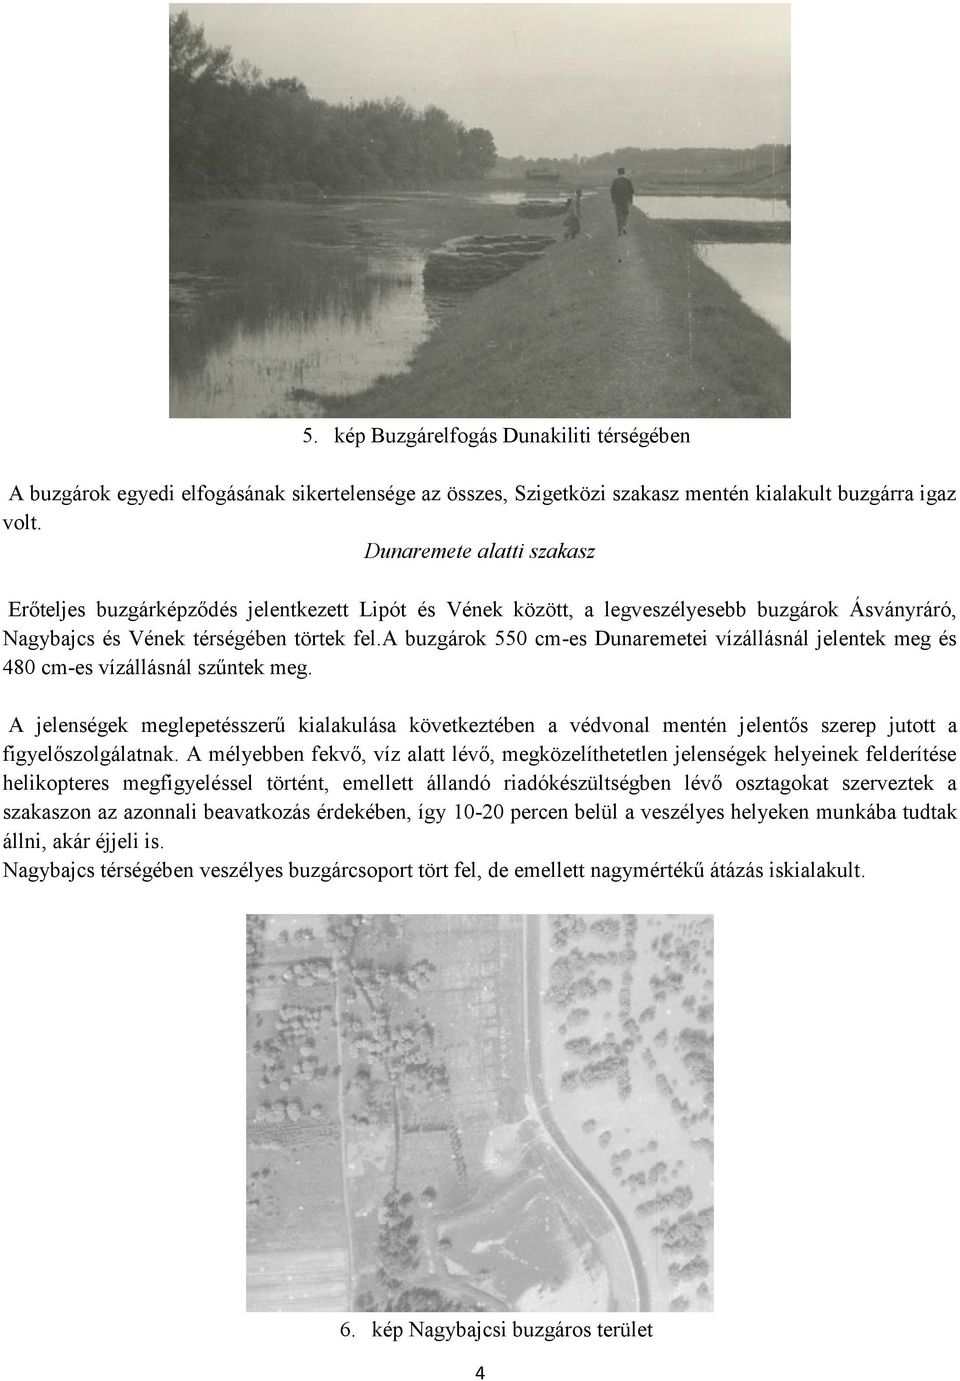 a buzgárok 550 cm-es Dunaremetei vízállásnál jelentek meg és 480 cm-es vízállásnál szűntek meg.